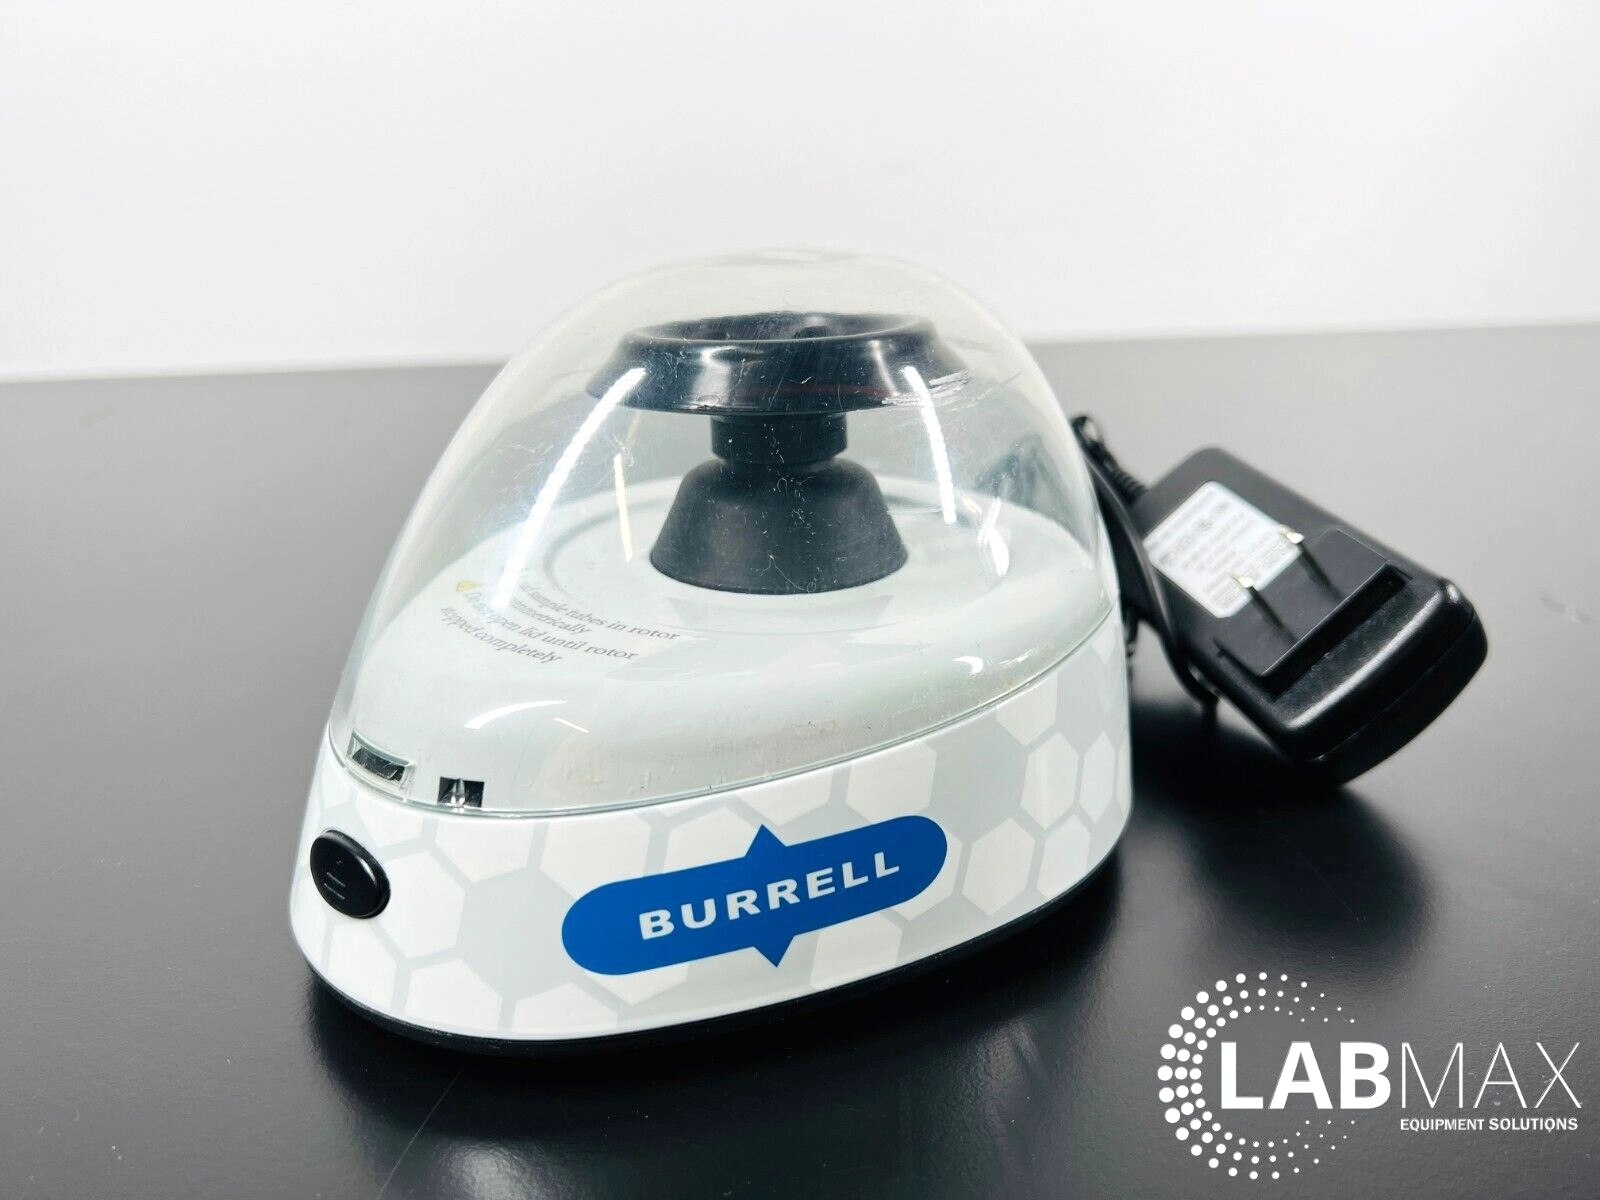 Burrell Scientific Mini Centrifuge with WARRANTY